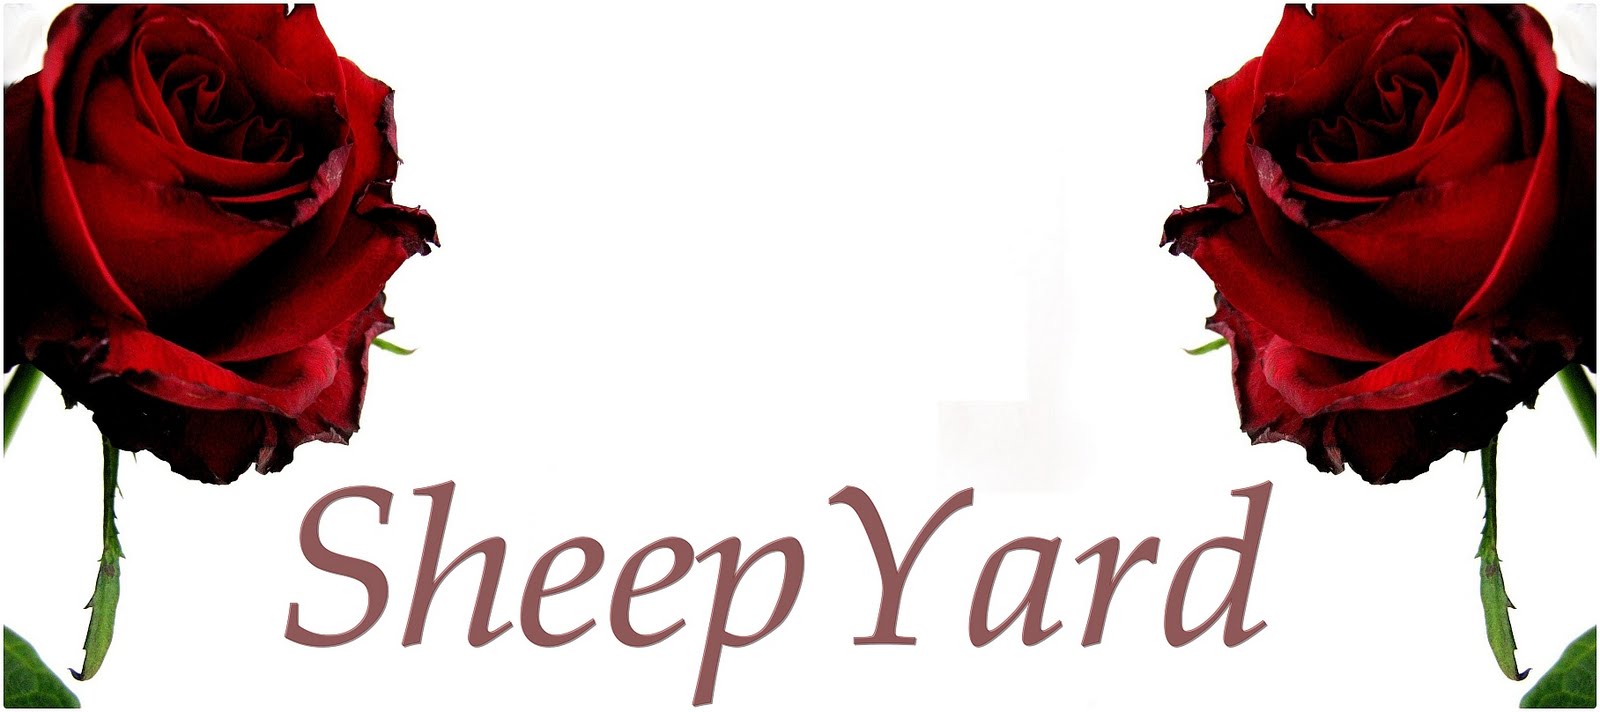 Sheep-yard